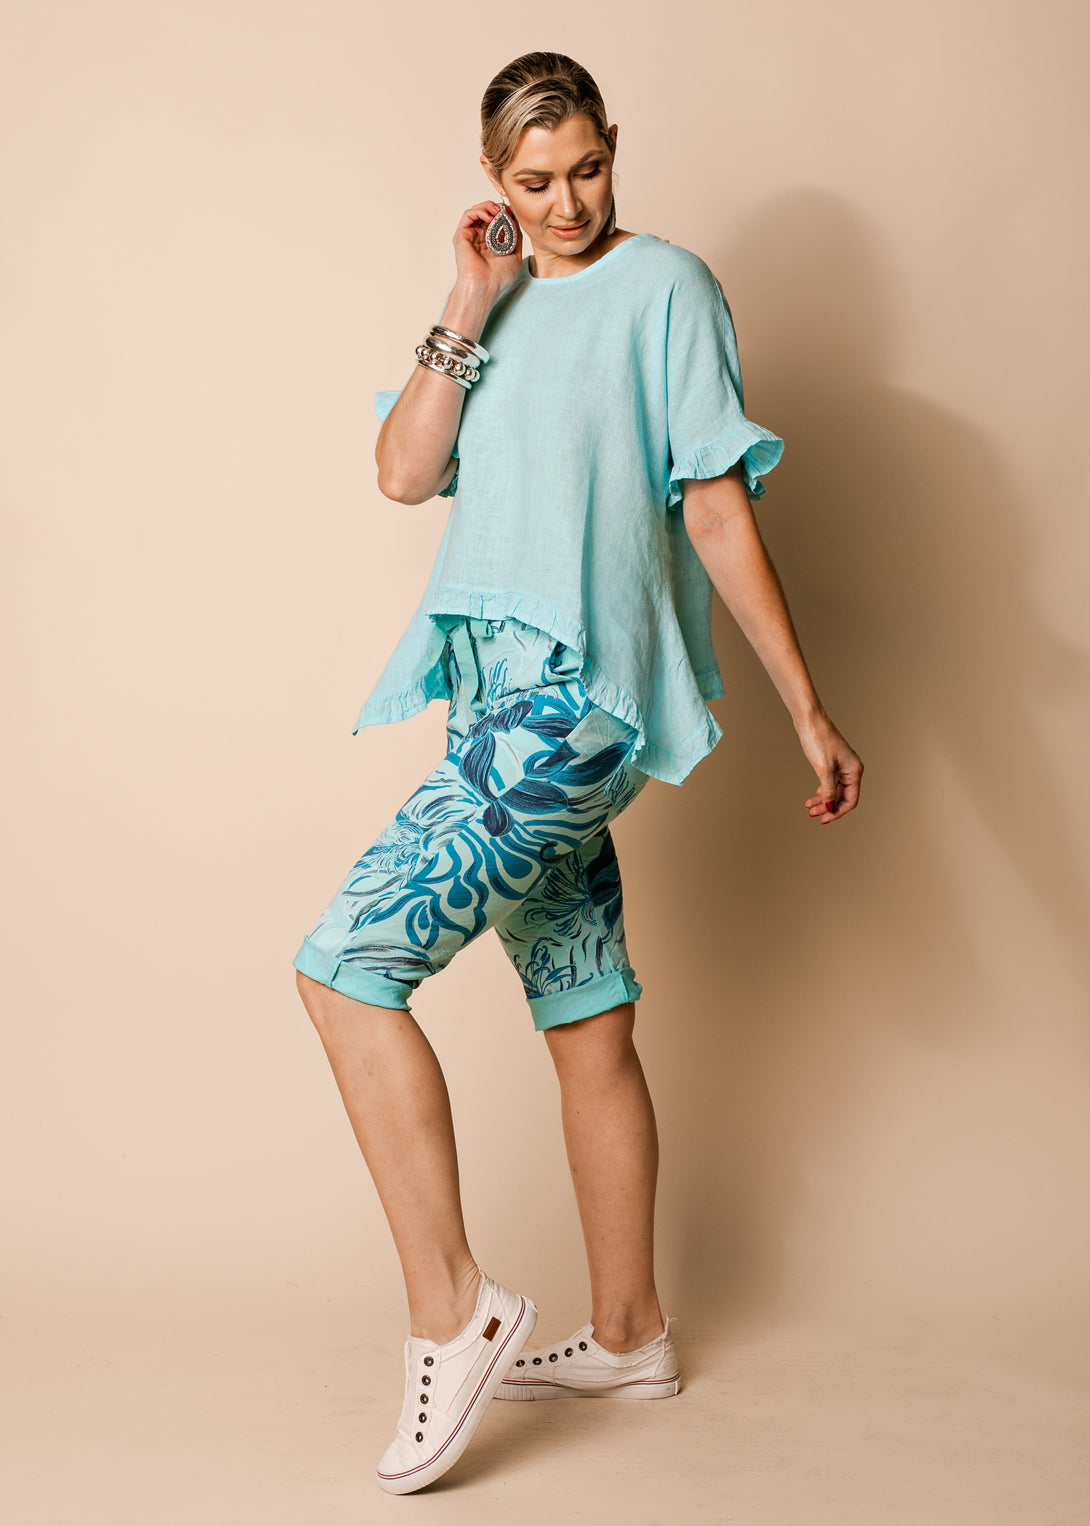 Chiara Linen Top in Aqua Mist - Imagine Fashion